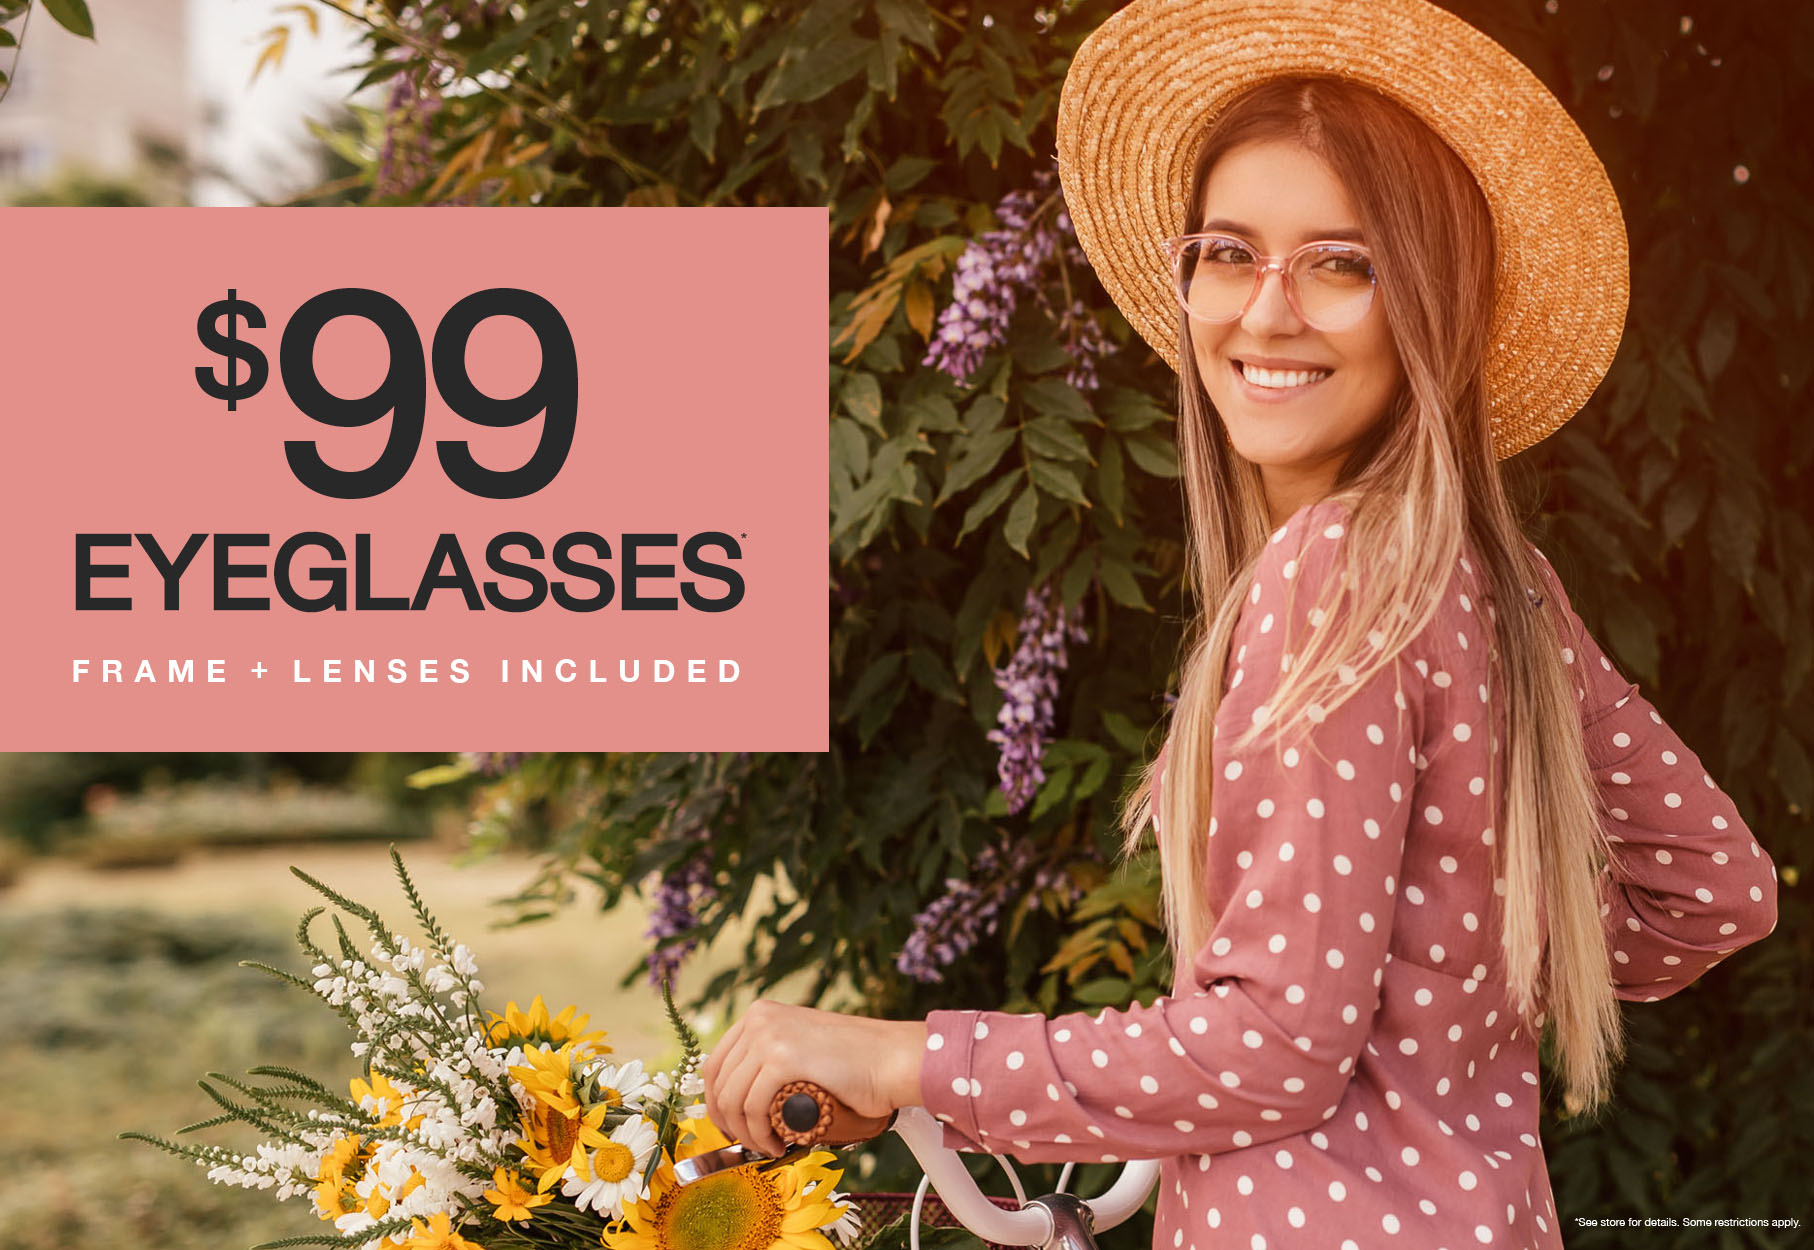 Girl on bike with glasses. $99 eyeglasses frame + lenses included.